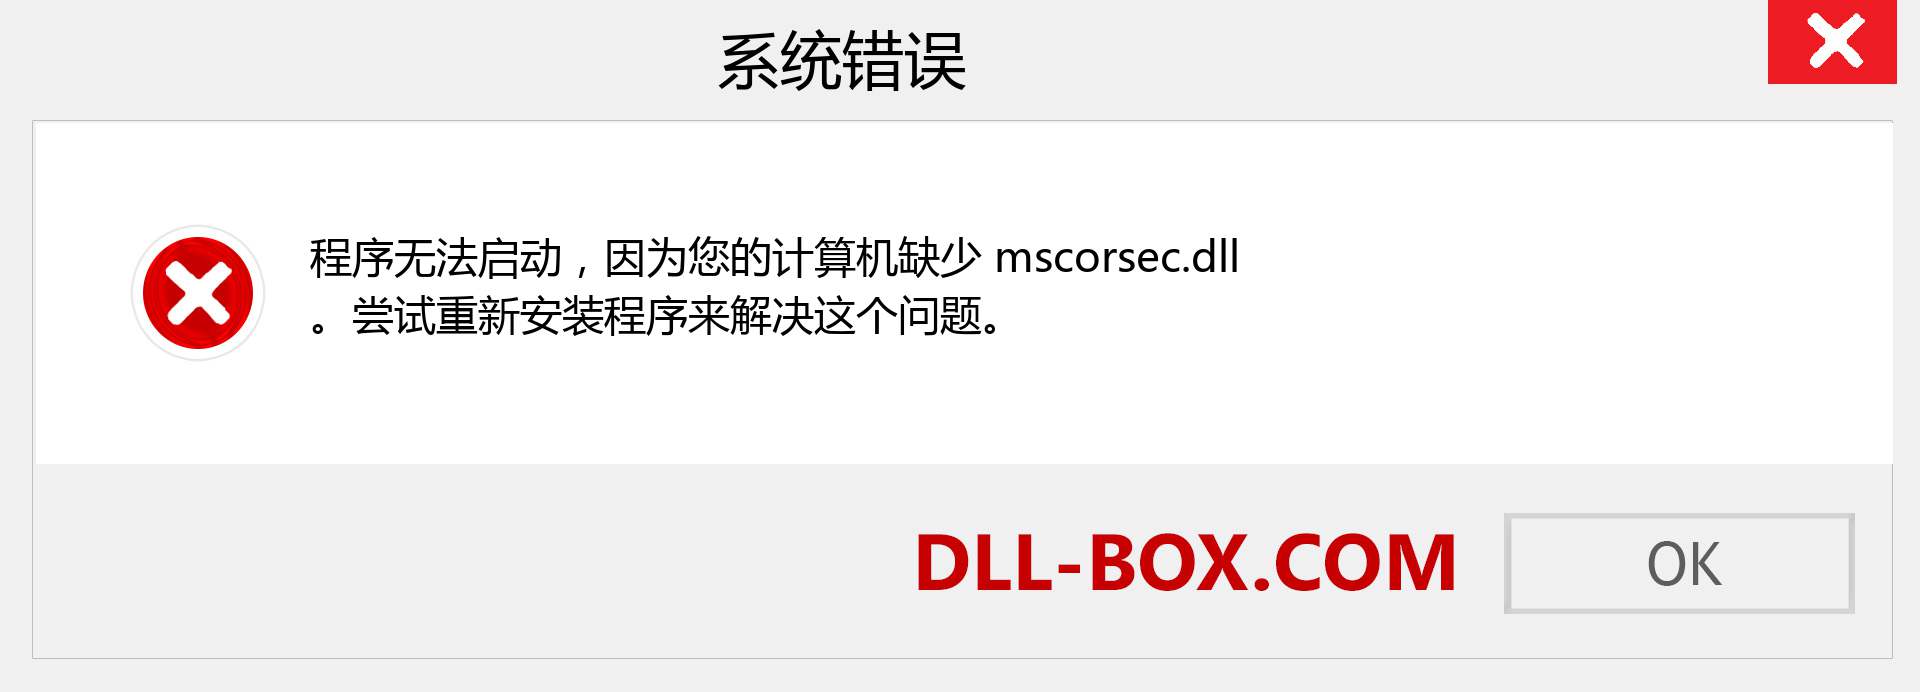 mscorsec.dll 文件丢失？。 适用于 Windows 7、8、10 的下载 - 修复 Windows、照片、图像上的 mscorsec dll 丢失错误